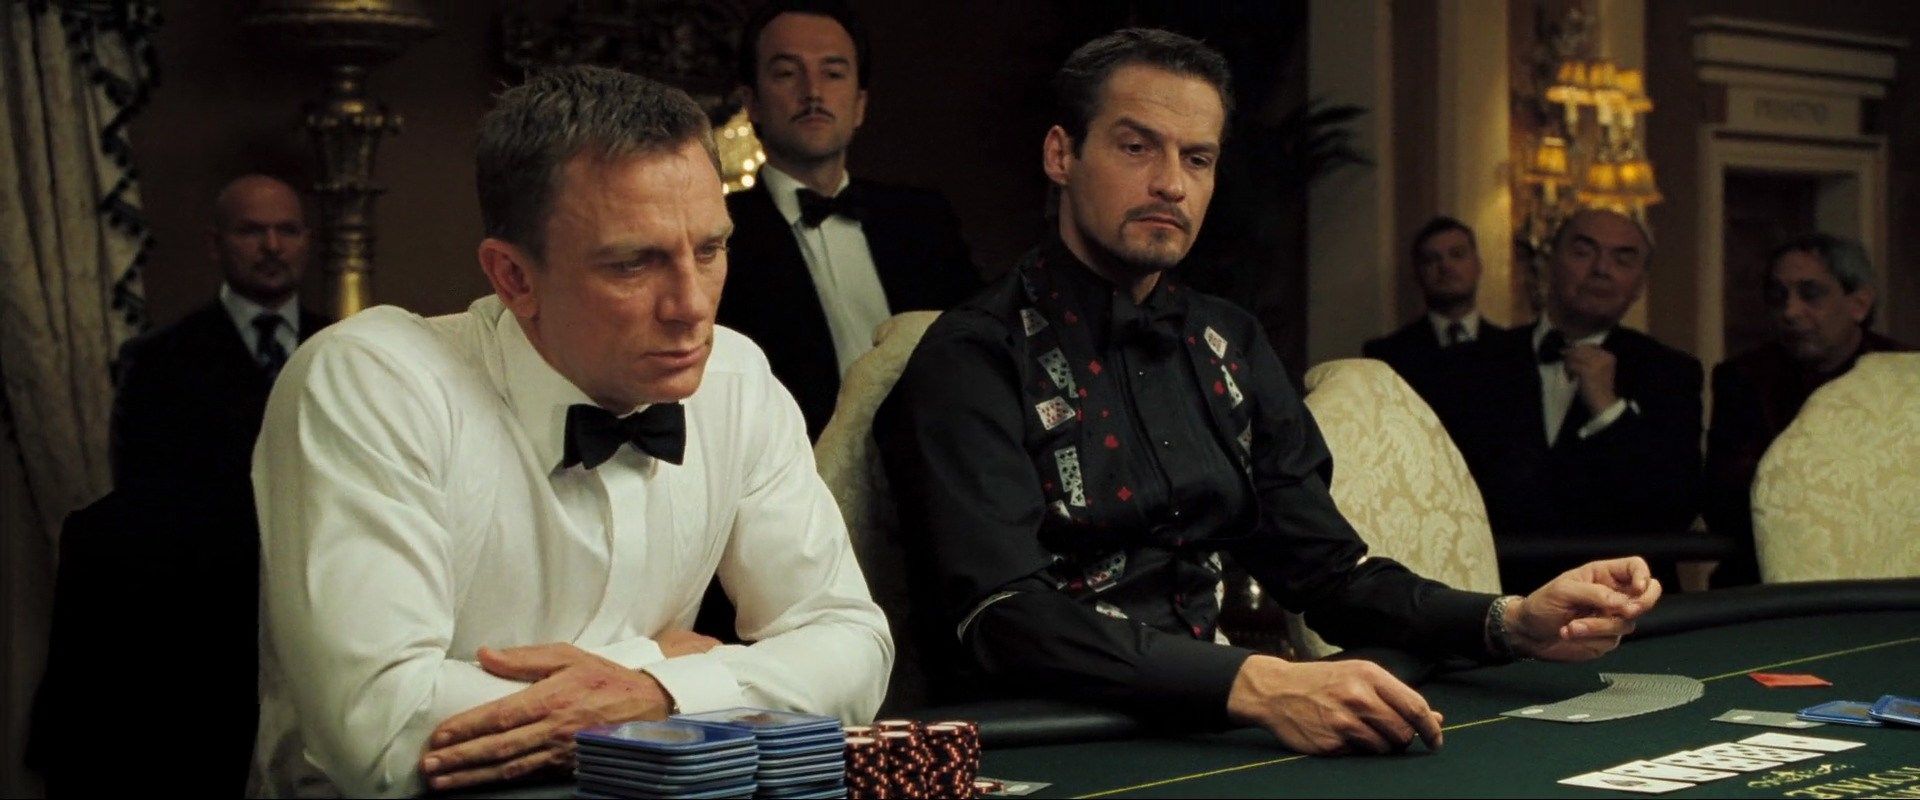 ept poker